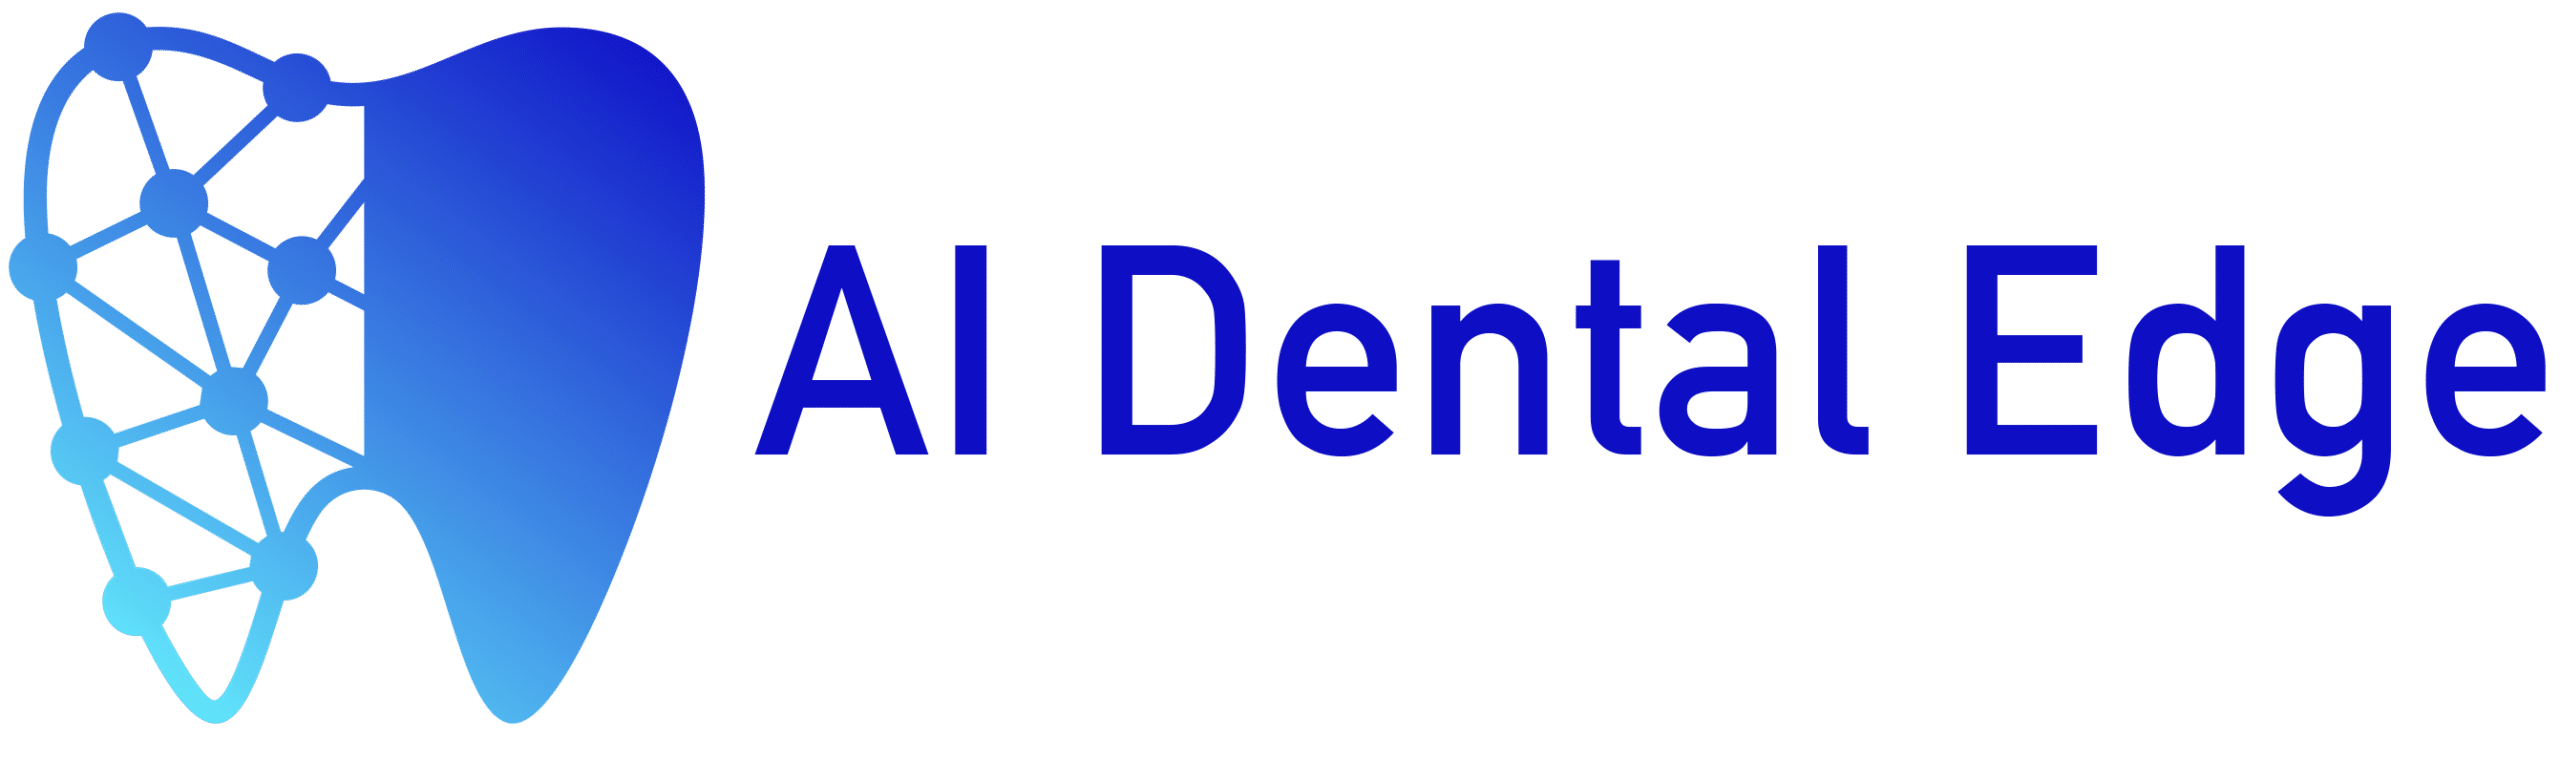 AI Dental Edge